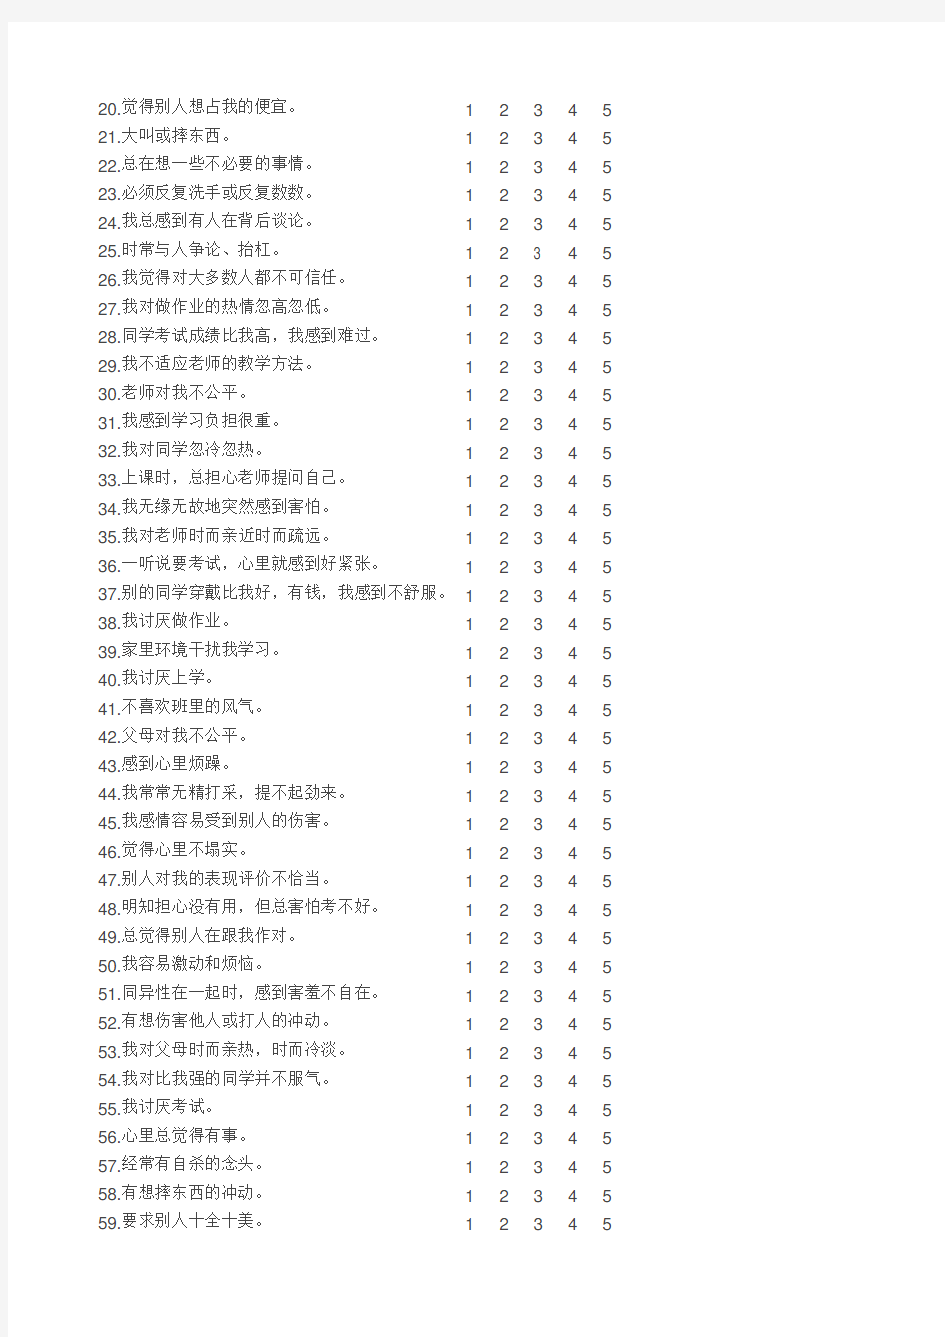 中国中学生心理健康量表及评分标准